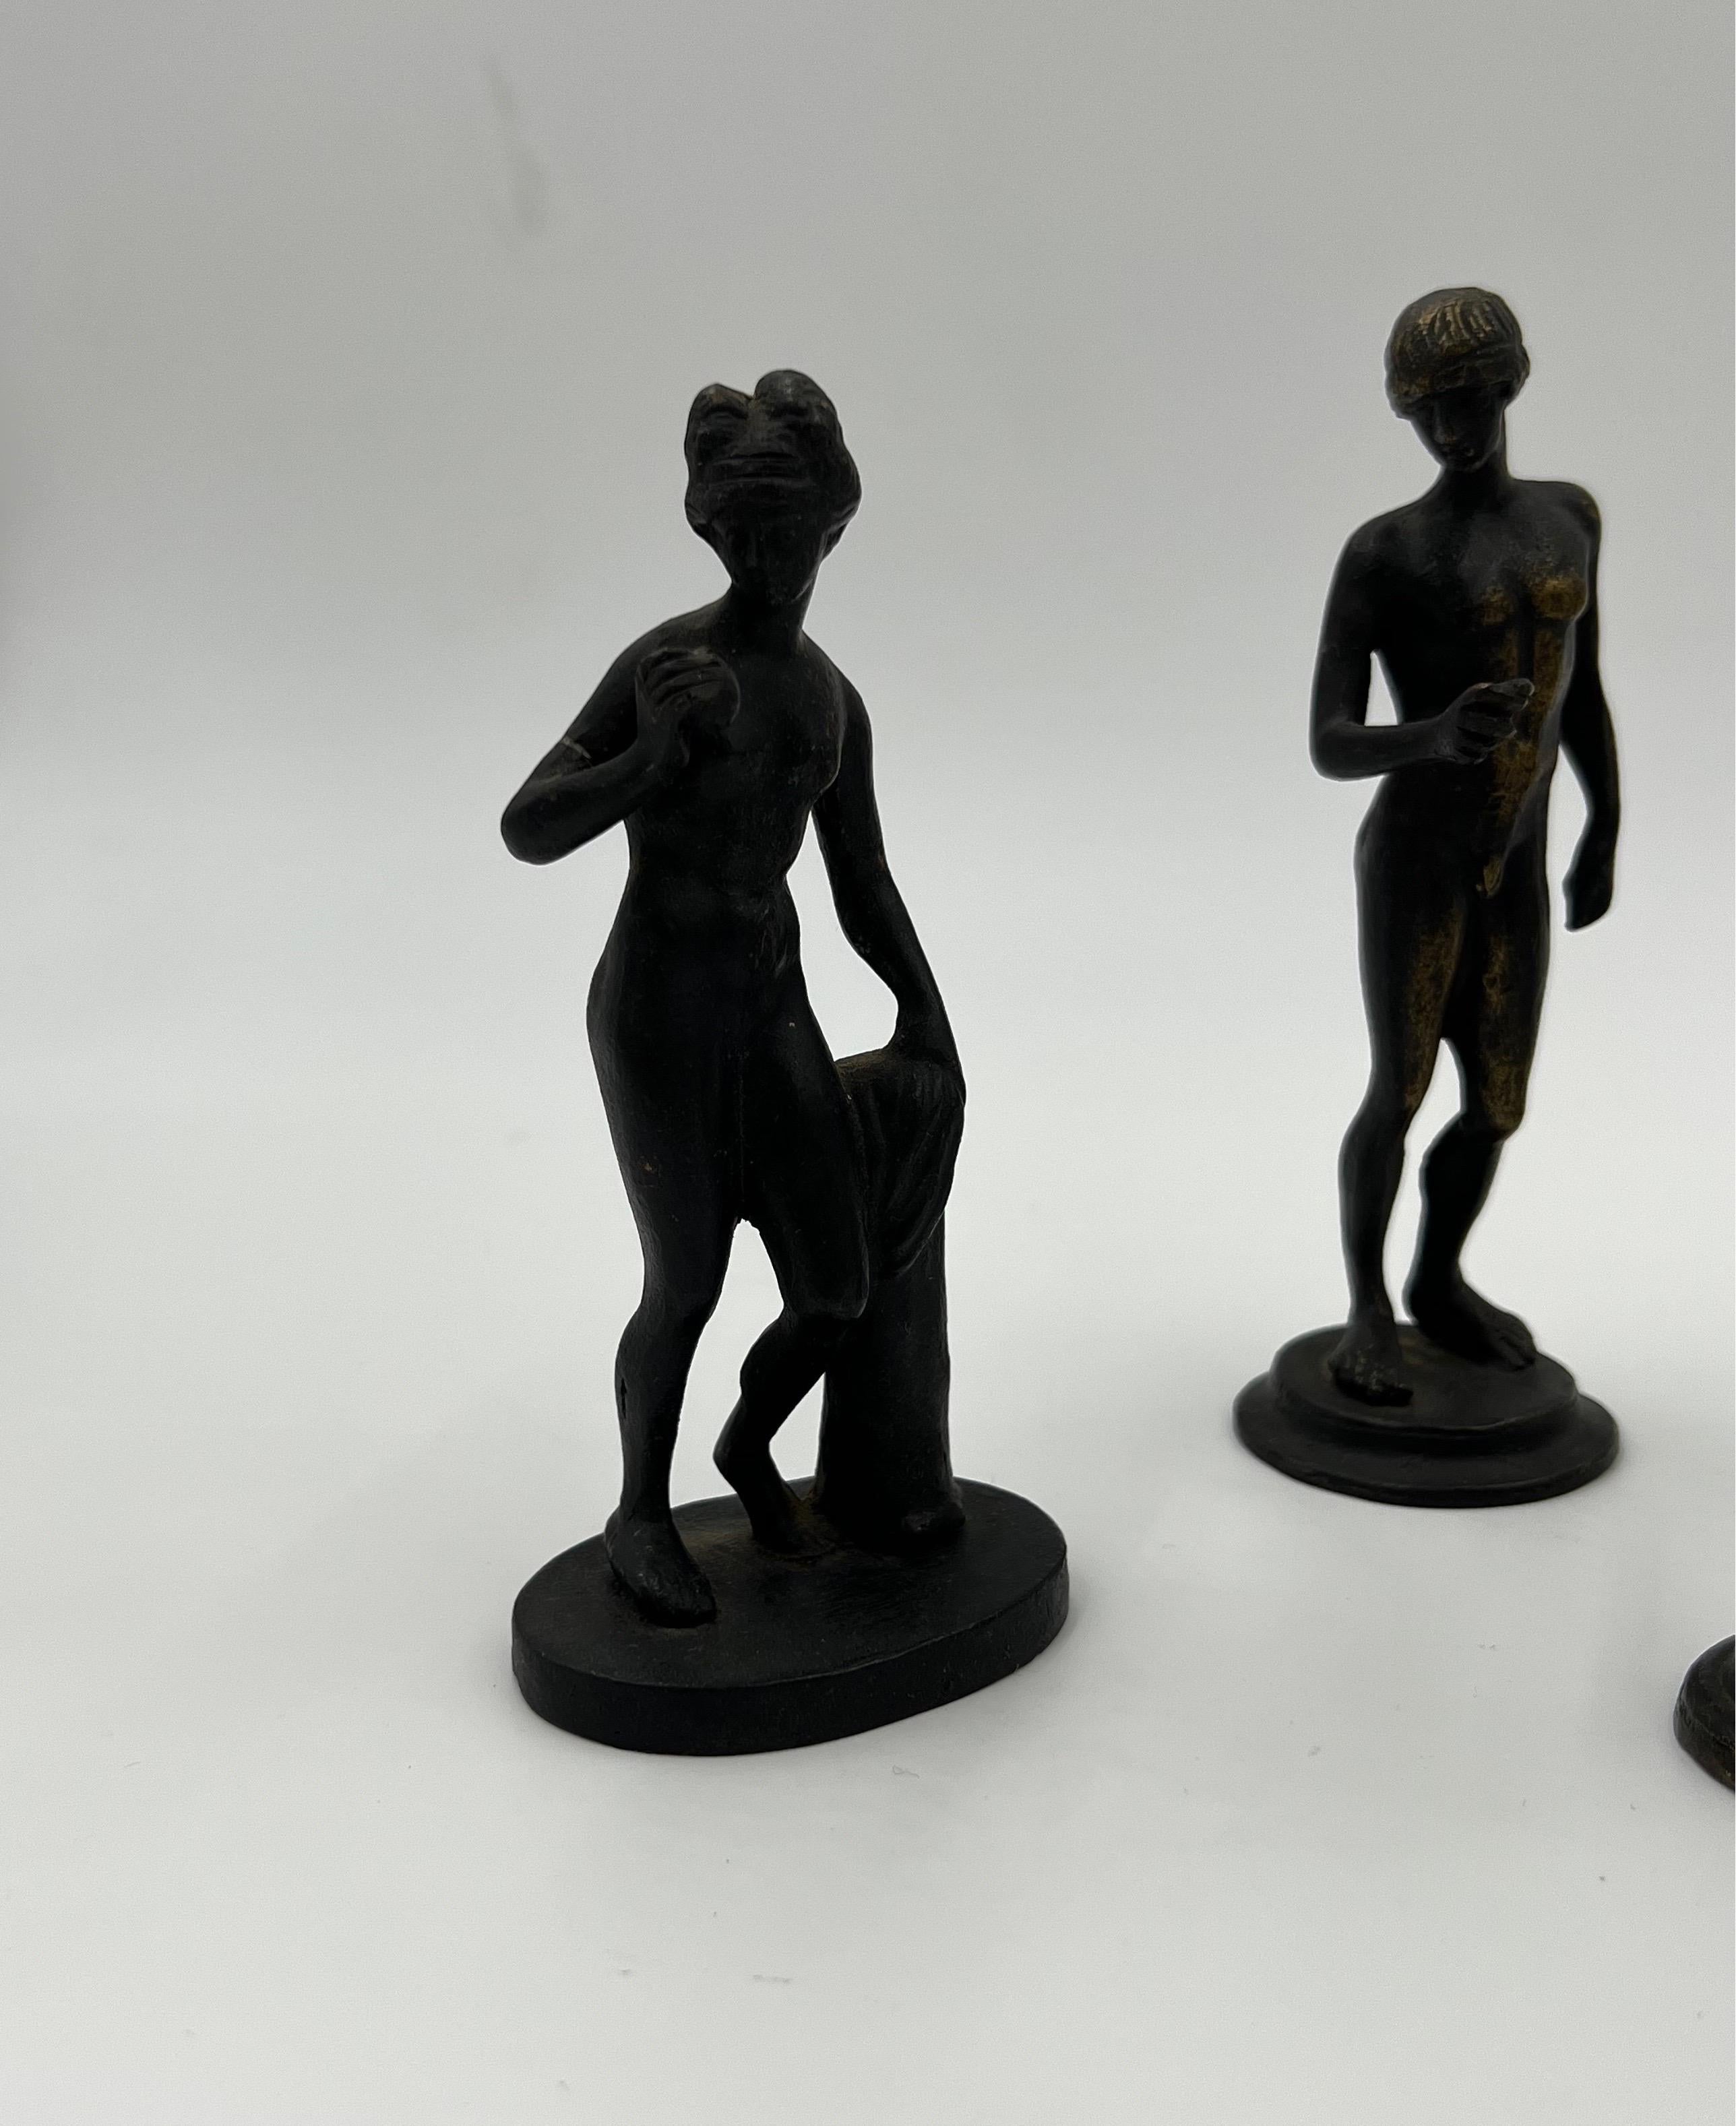 5 Piece Antique Italian Grand Tour Bronze Figures Including Venus, Eros & More !

Chaque figurine de grand tour de format cabinet est modelée d'après l'antiquité. Eros avec dauphin mesure 3